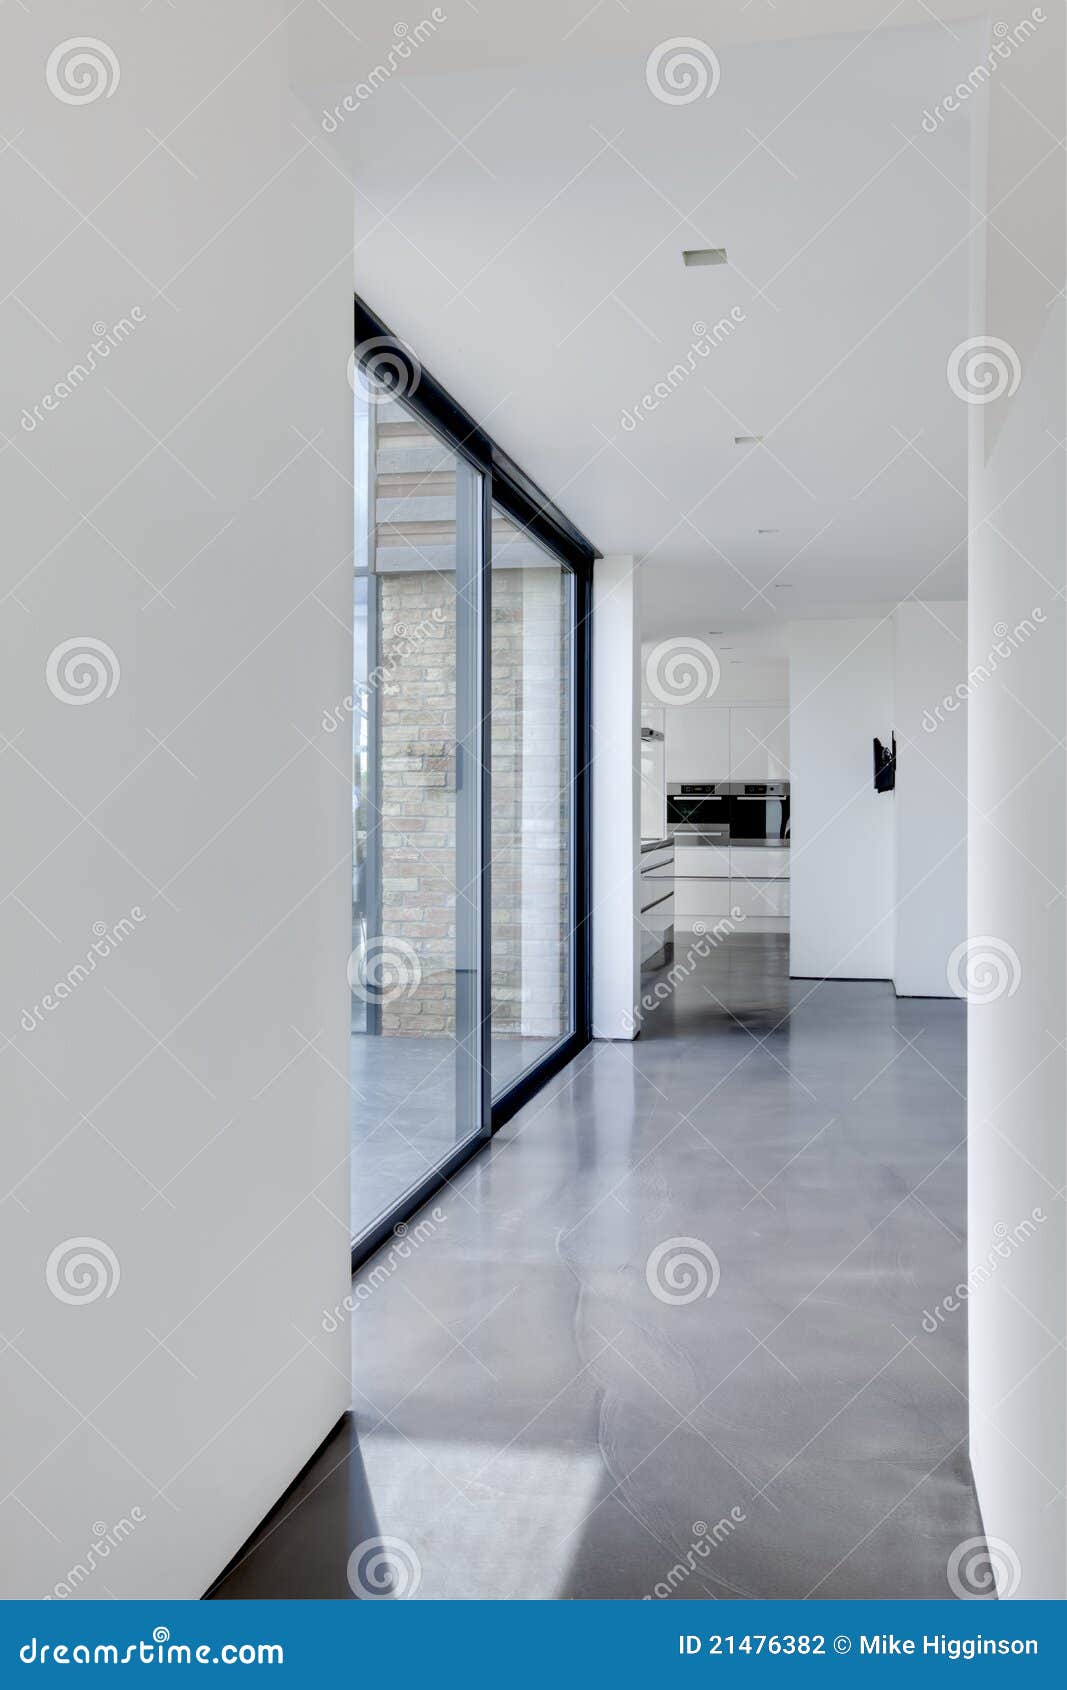 modern minimalist interior